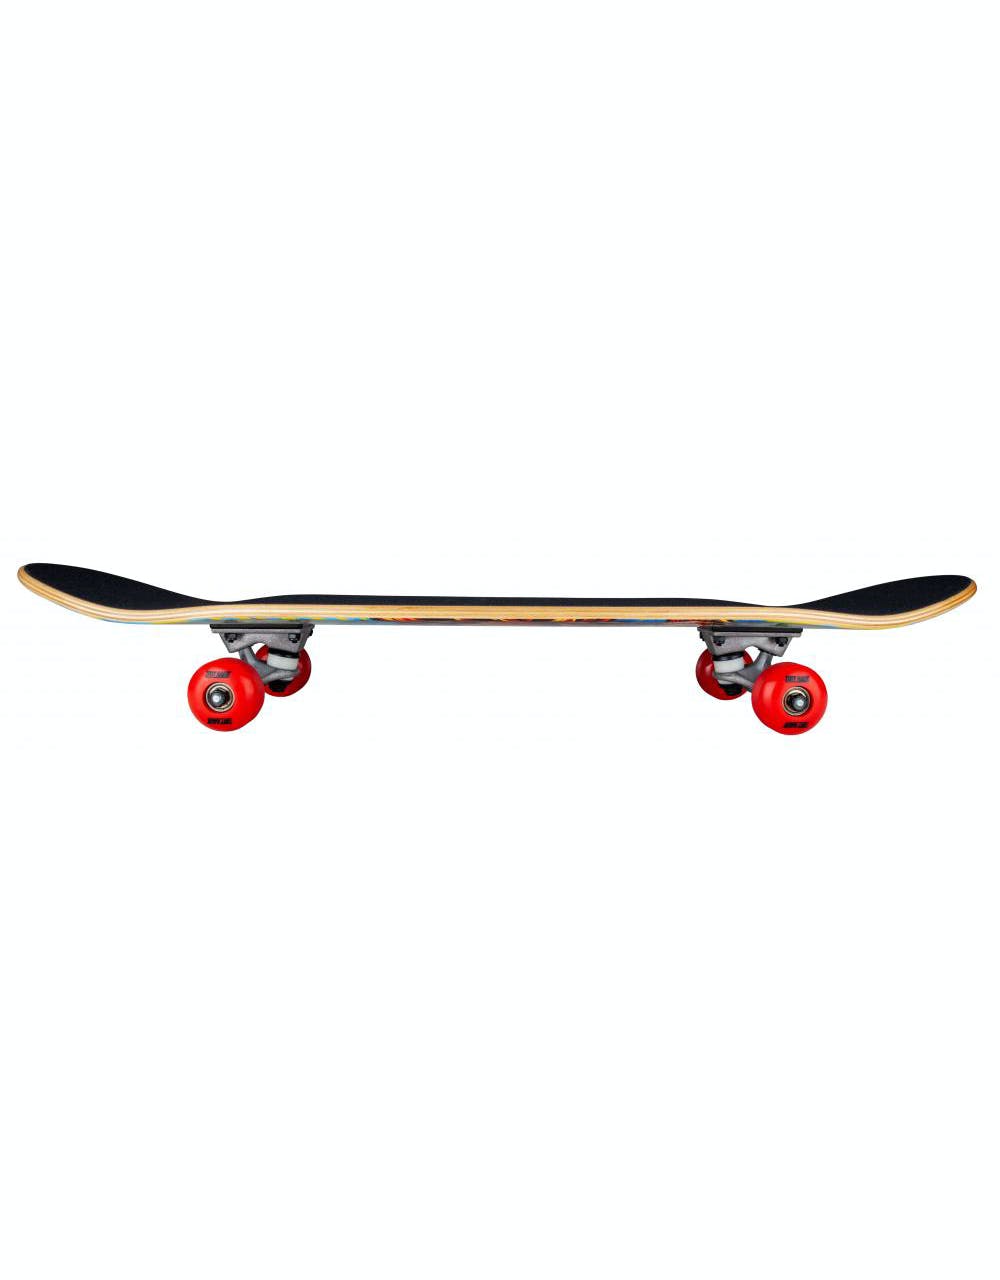 Tony Hawk 180 Golden Hawk Complete Skateboard - 7.75"